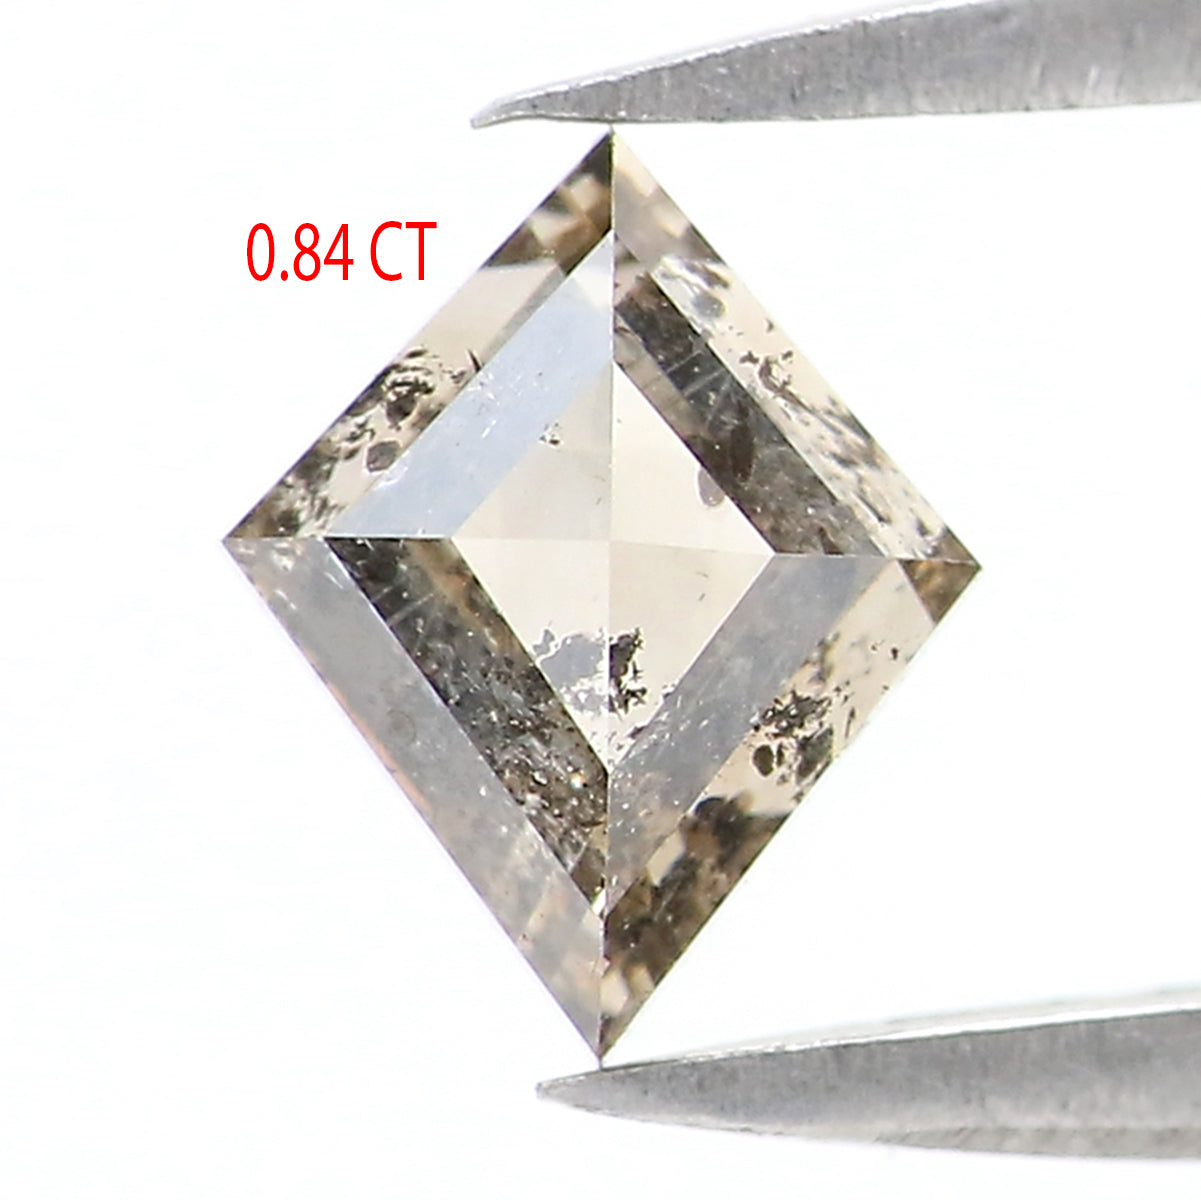 0.84 CT Natural Loose Kite Shape Diamond White - J Color Kite Cut Diamond 7.10 MM Natural Diamond White - J Kite Rose Cut Diamond QL2602